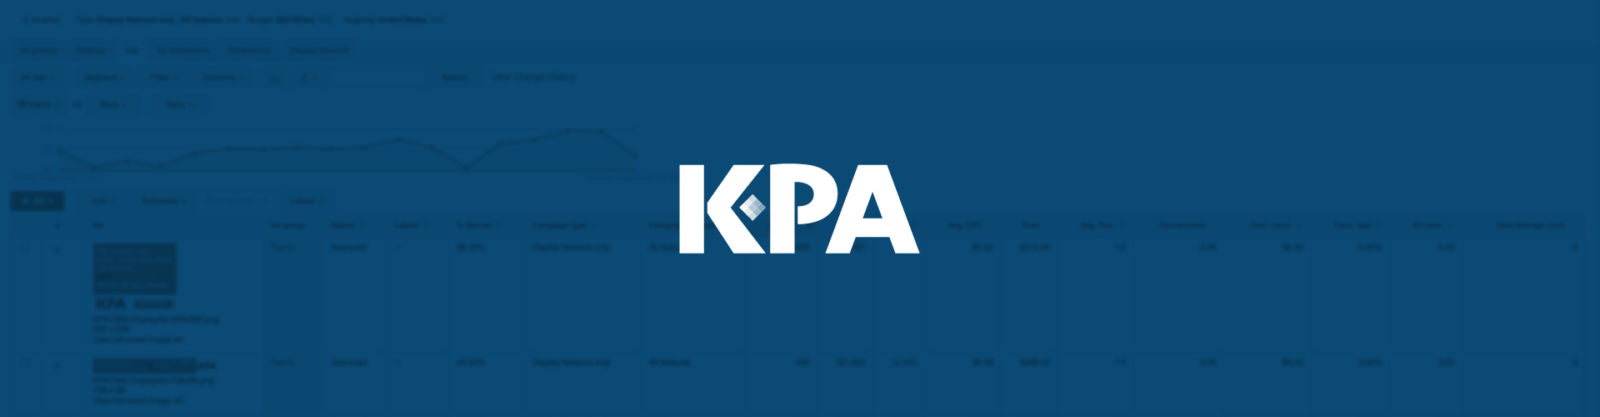 KPA-DashboardImage